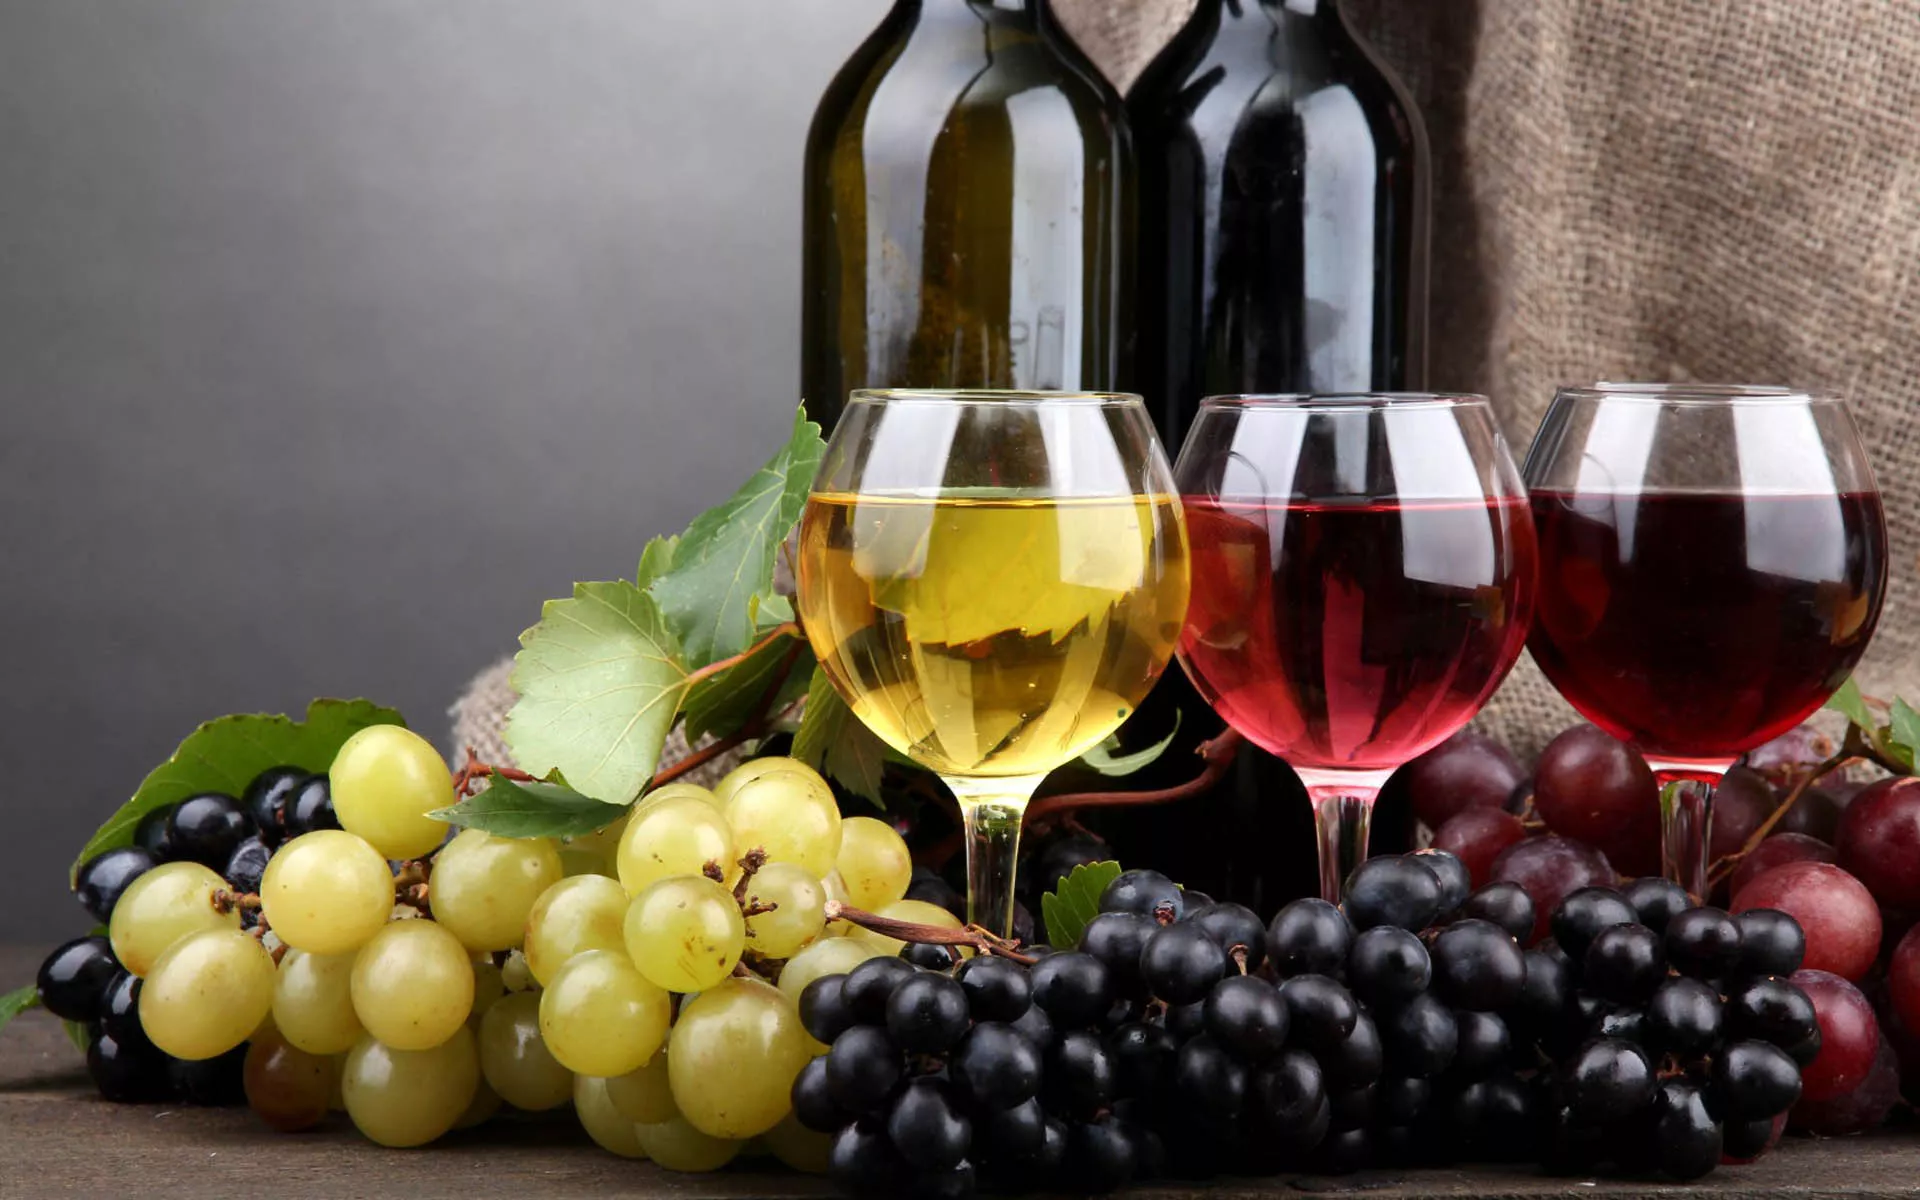 Wines Radovan in Croatia, Europe | Wineries - Rated 1